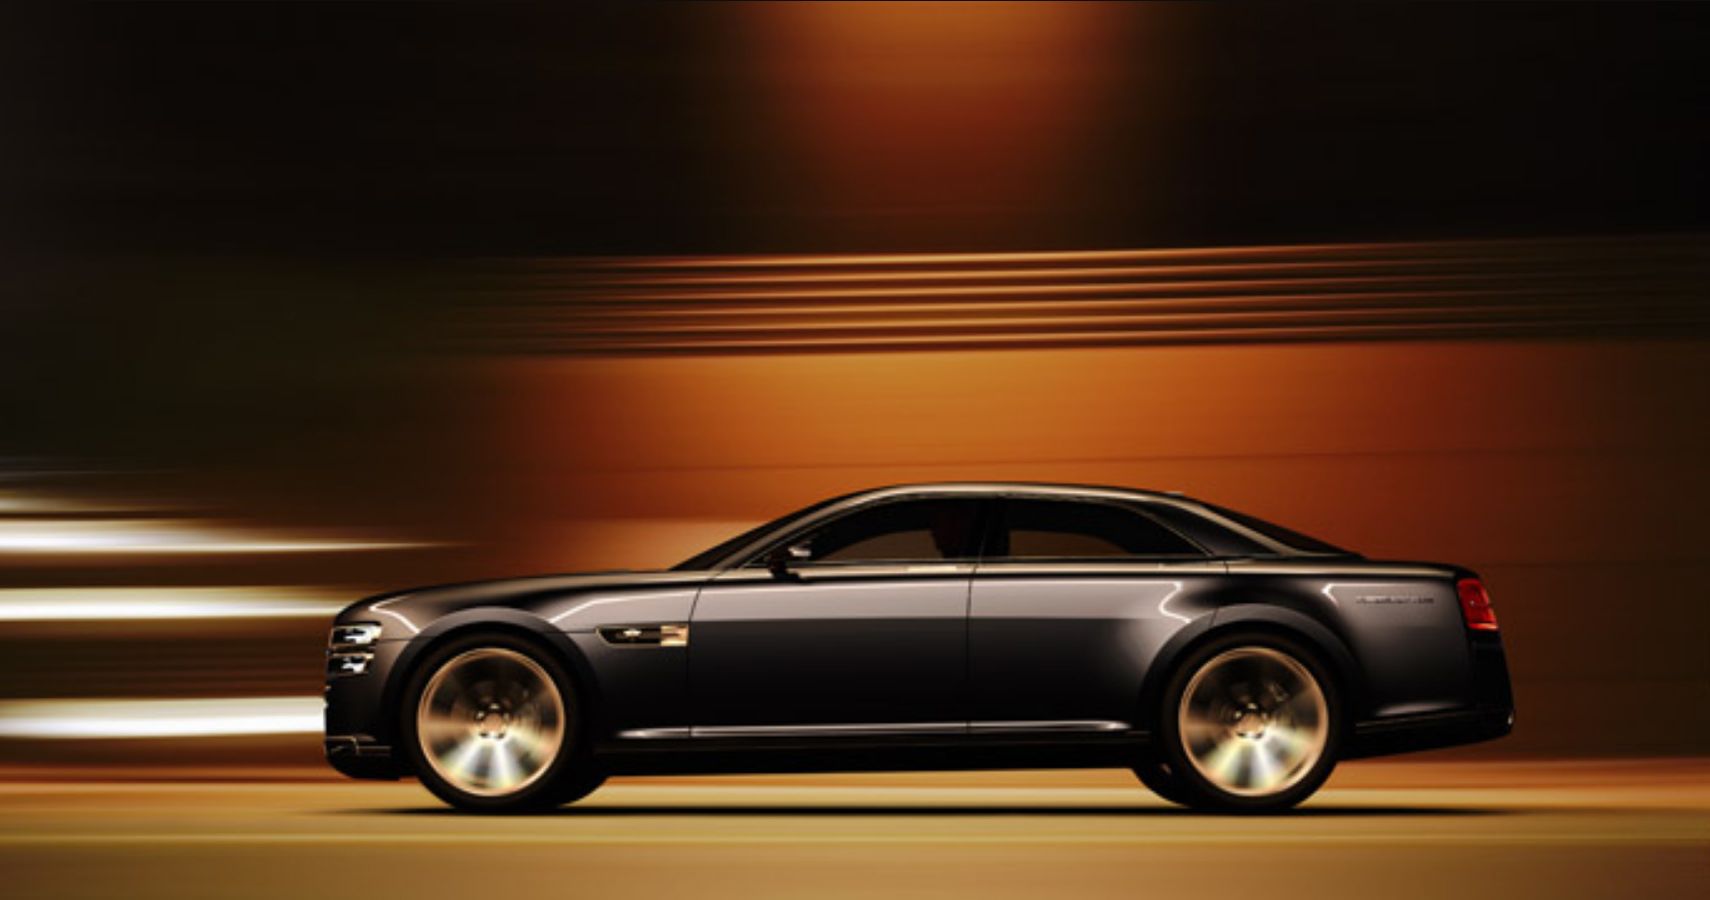 2007 Ford Interceptor concept car promotion image